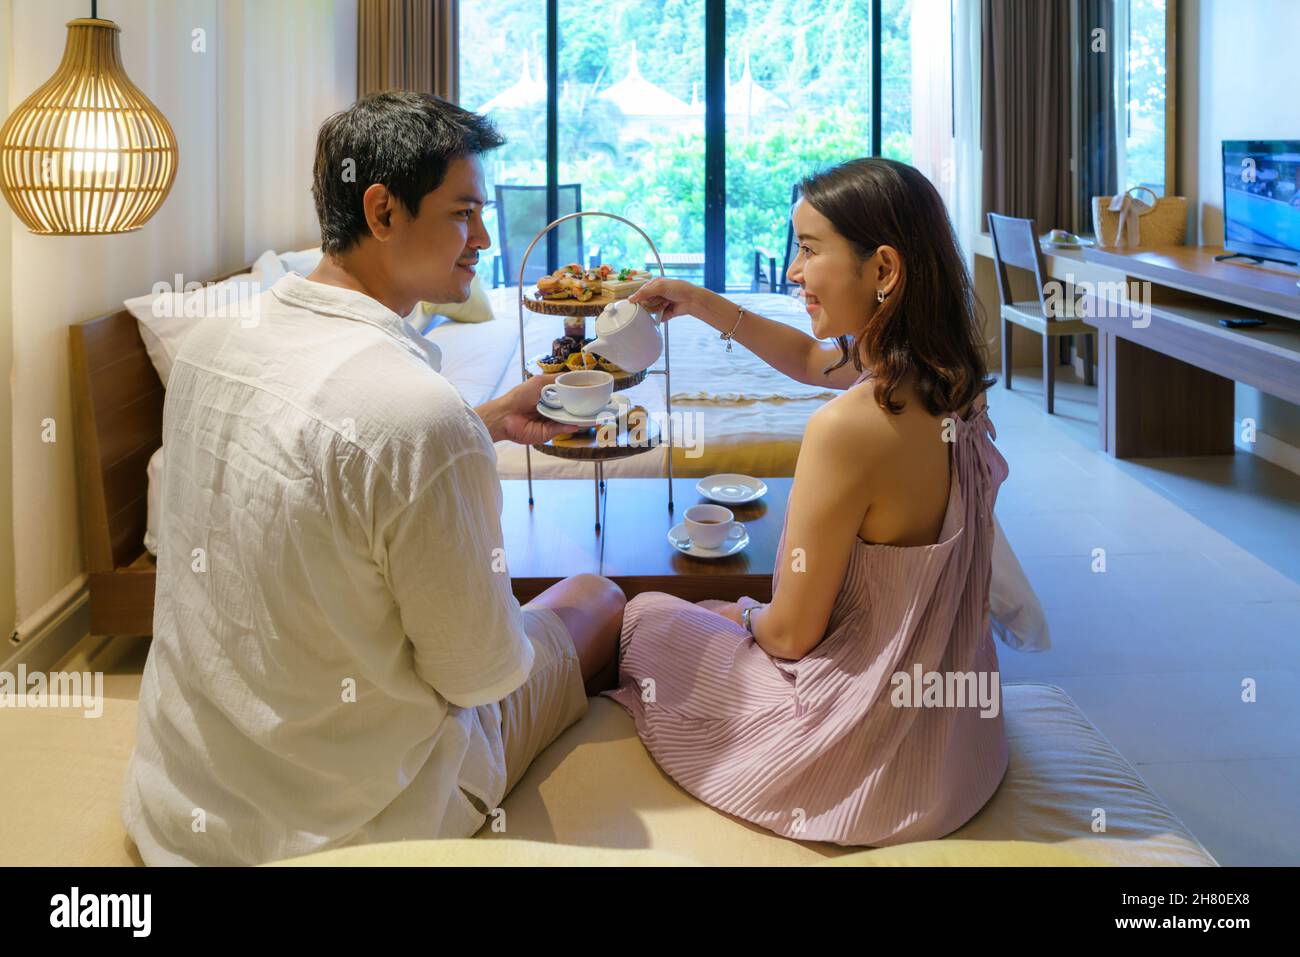 Las parejas asiáticas disfrutan de unas vacaciones románticas. Tomando un té de la tarde como una mujer vierte té para su novio en un lujoso dormitorio de hotel. Foto de stock